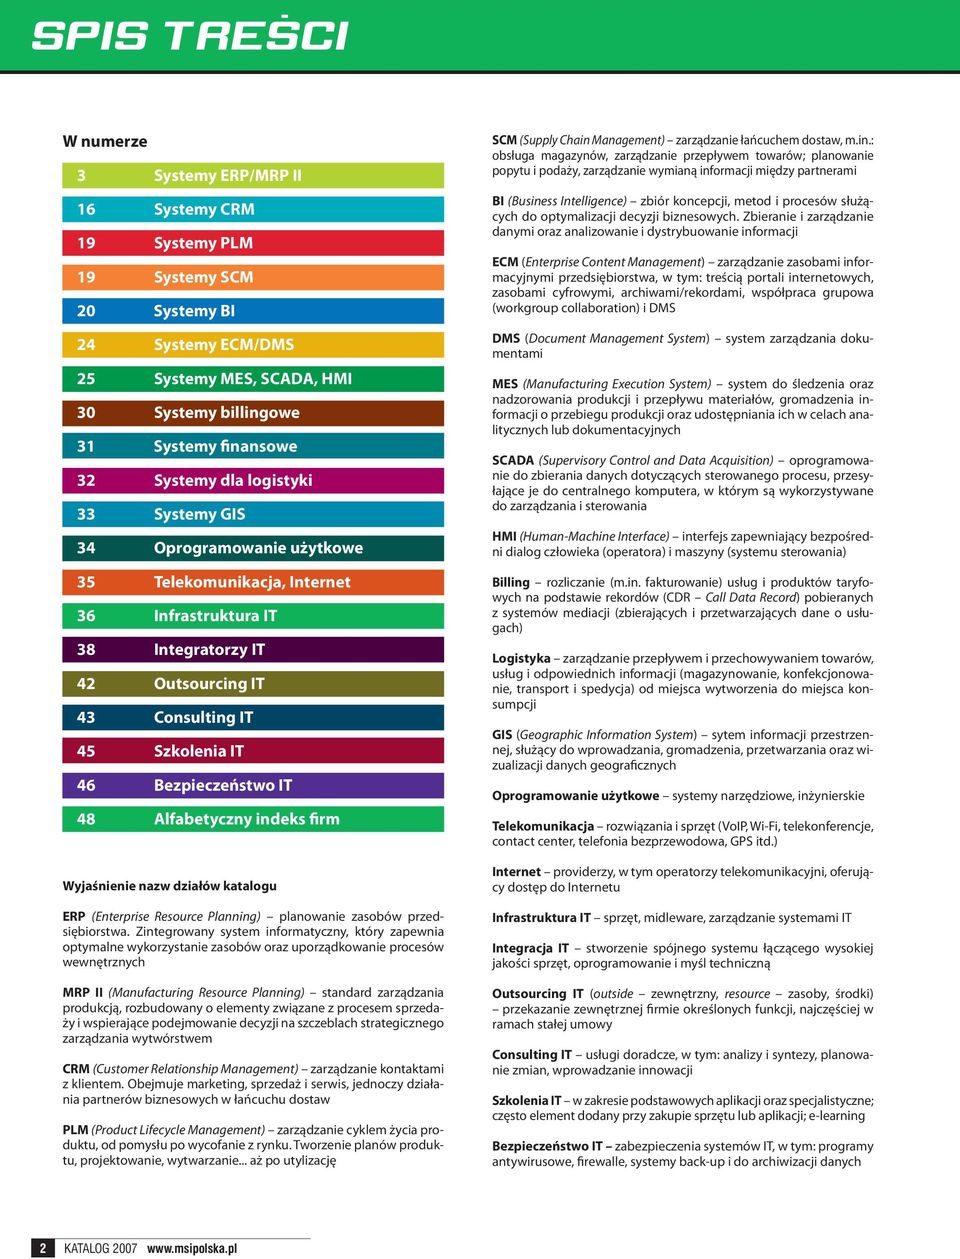 Bezpieczeństwo IT 48 Alfabetyczny indeks firm Wyjaśnienie nazw działów katalogu ERP (Enterprise Resource Planning) planowanie zasobów przedsiębiorstwa.